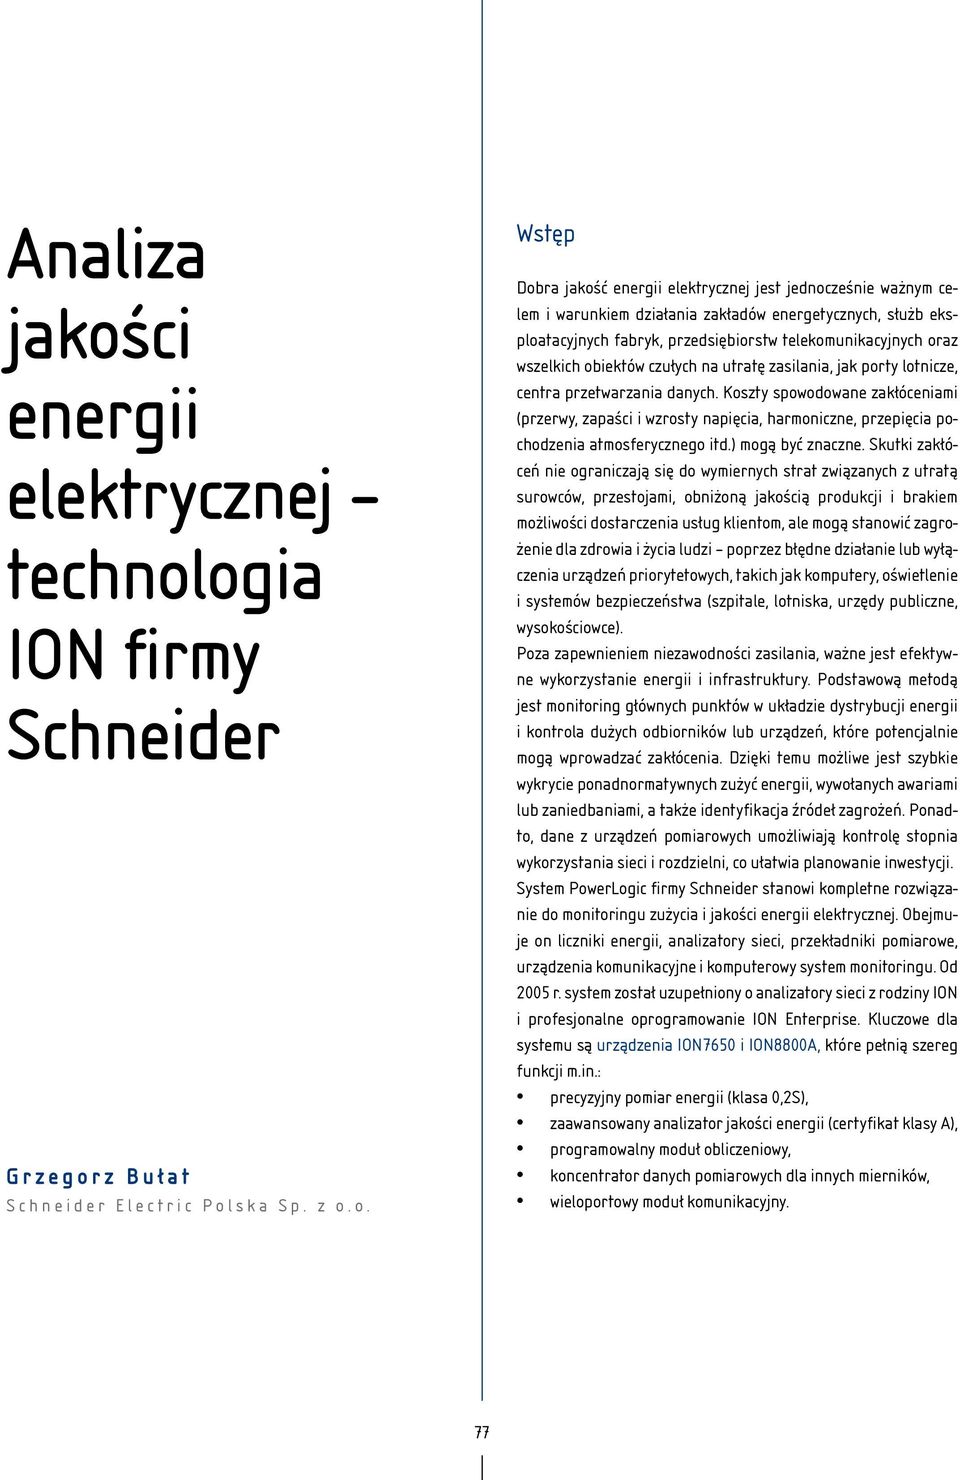 ogia ION firmy Schneider Grzegorz Bułat Schneider Electric Polska Sp. z o.o. Wstęp Dobra jakość energii elektrycznej jest jednocześnie ważnym celem i warunkiem działania zakładów energetycznych,